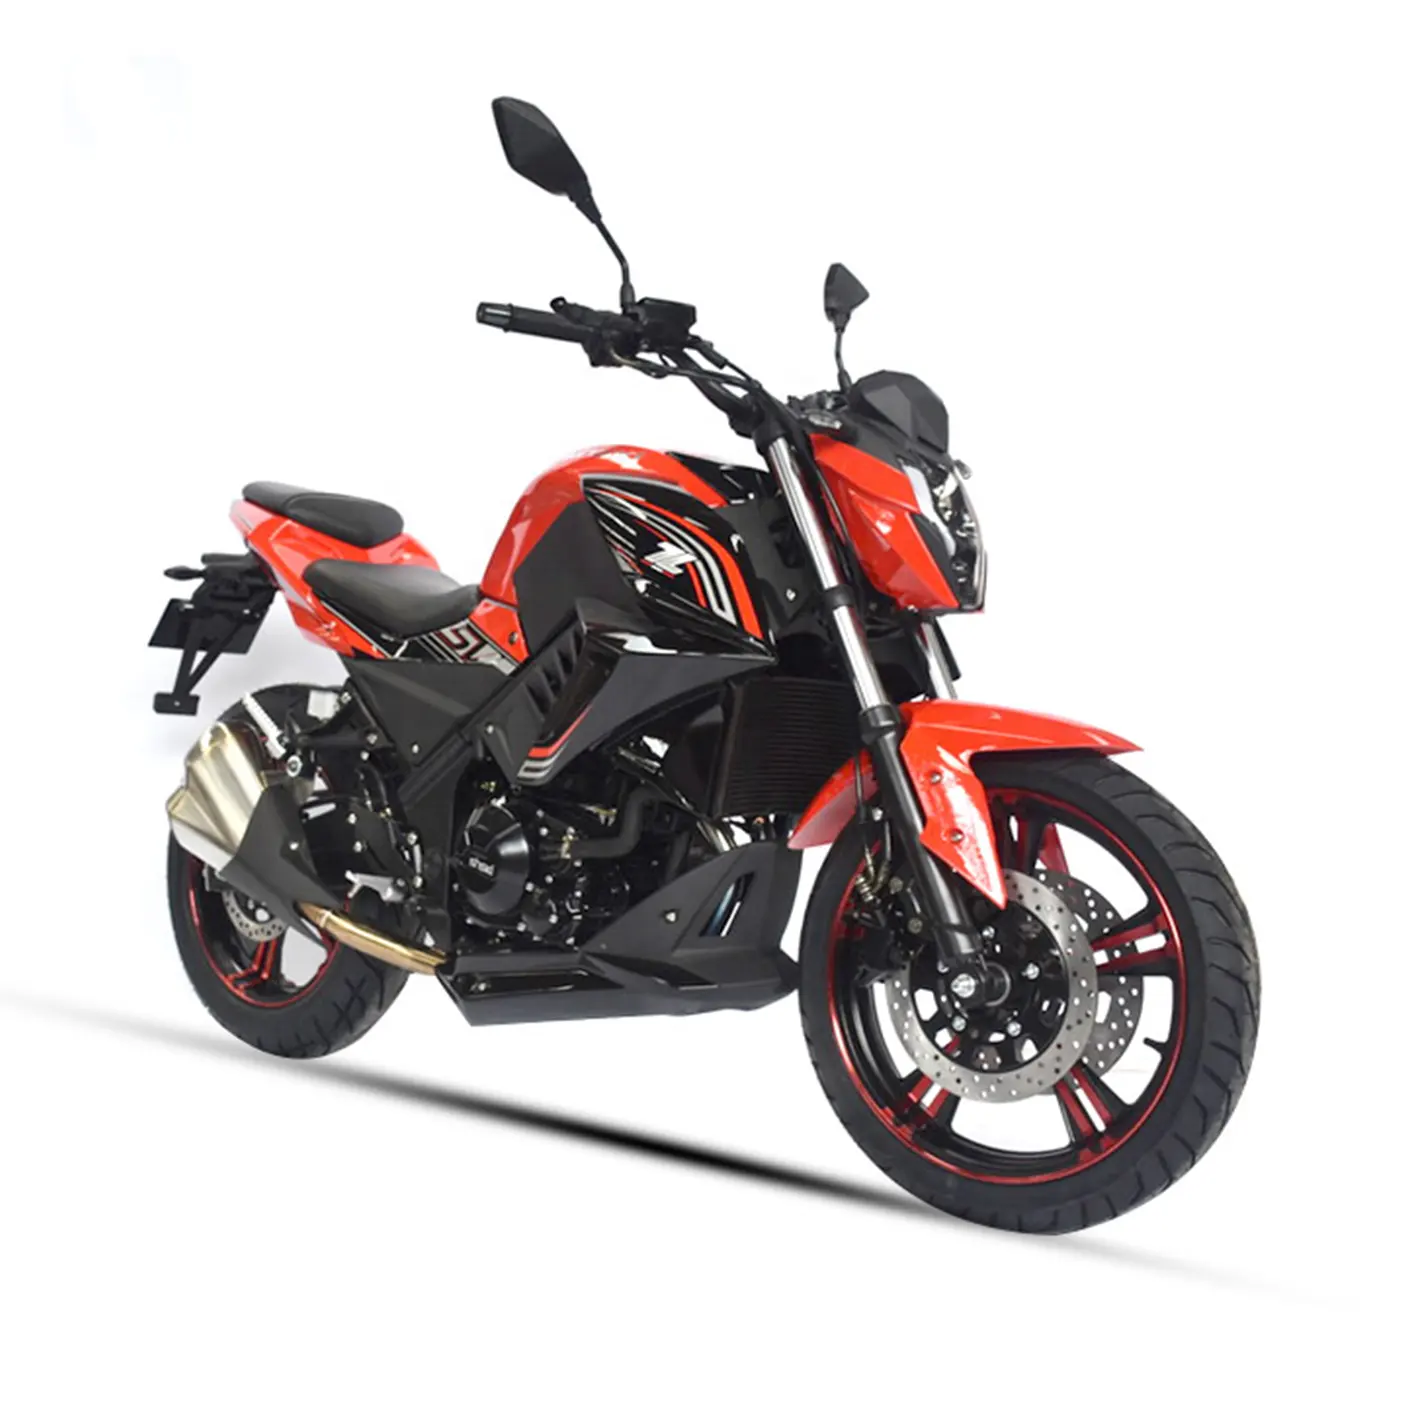 Мотоцикл SINSKI с прямой поддержкой DDP RTS 400cc, бензиновый мотоцикл, скорость 130 км/ч, для продажи в США, б/у